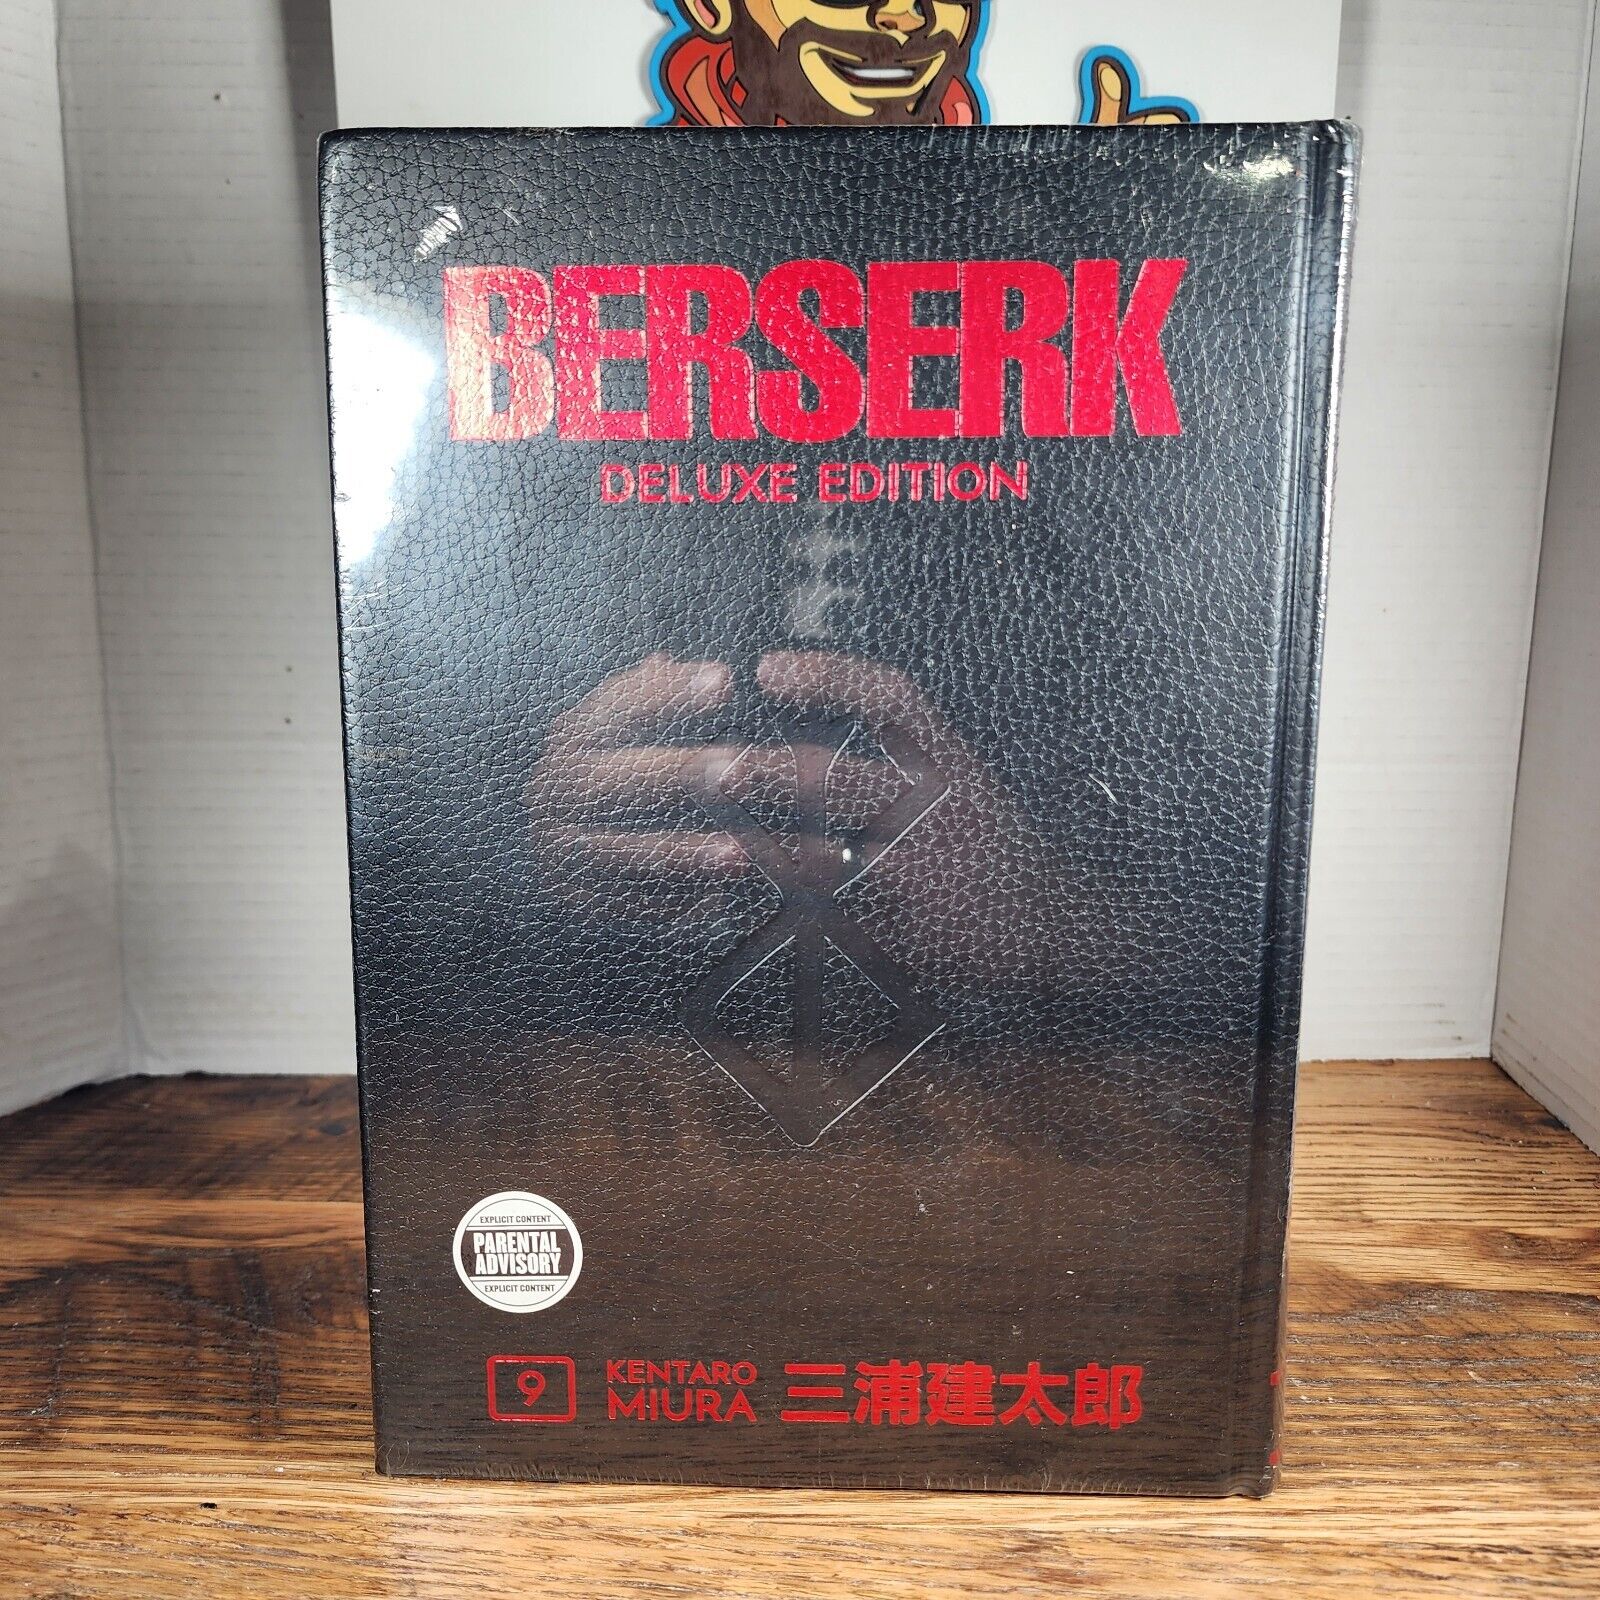 Berserk Deluxe Edition #9 (Dark Horse Comics, November 2021)